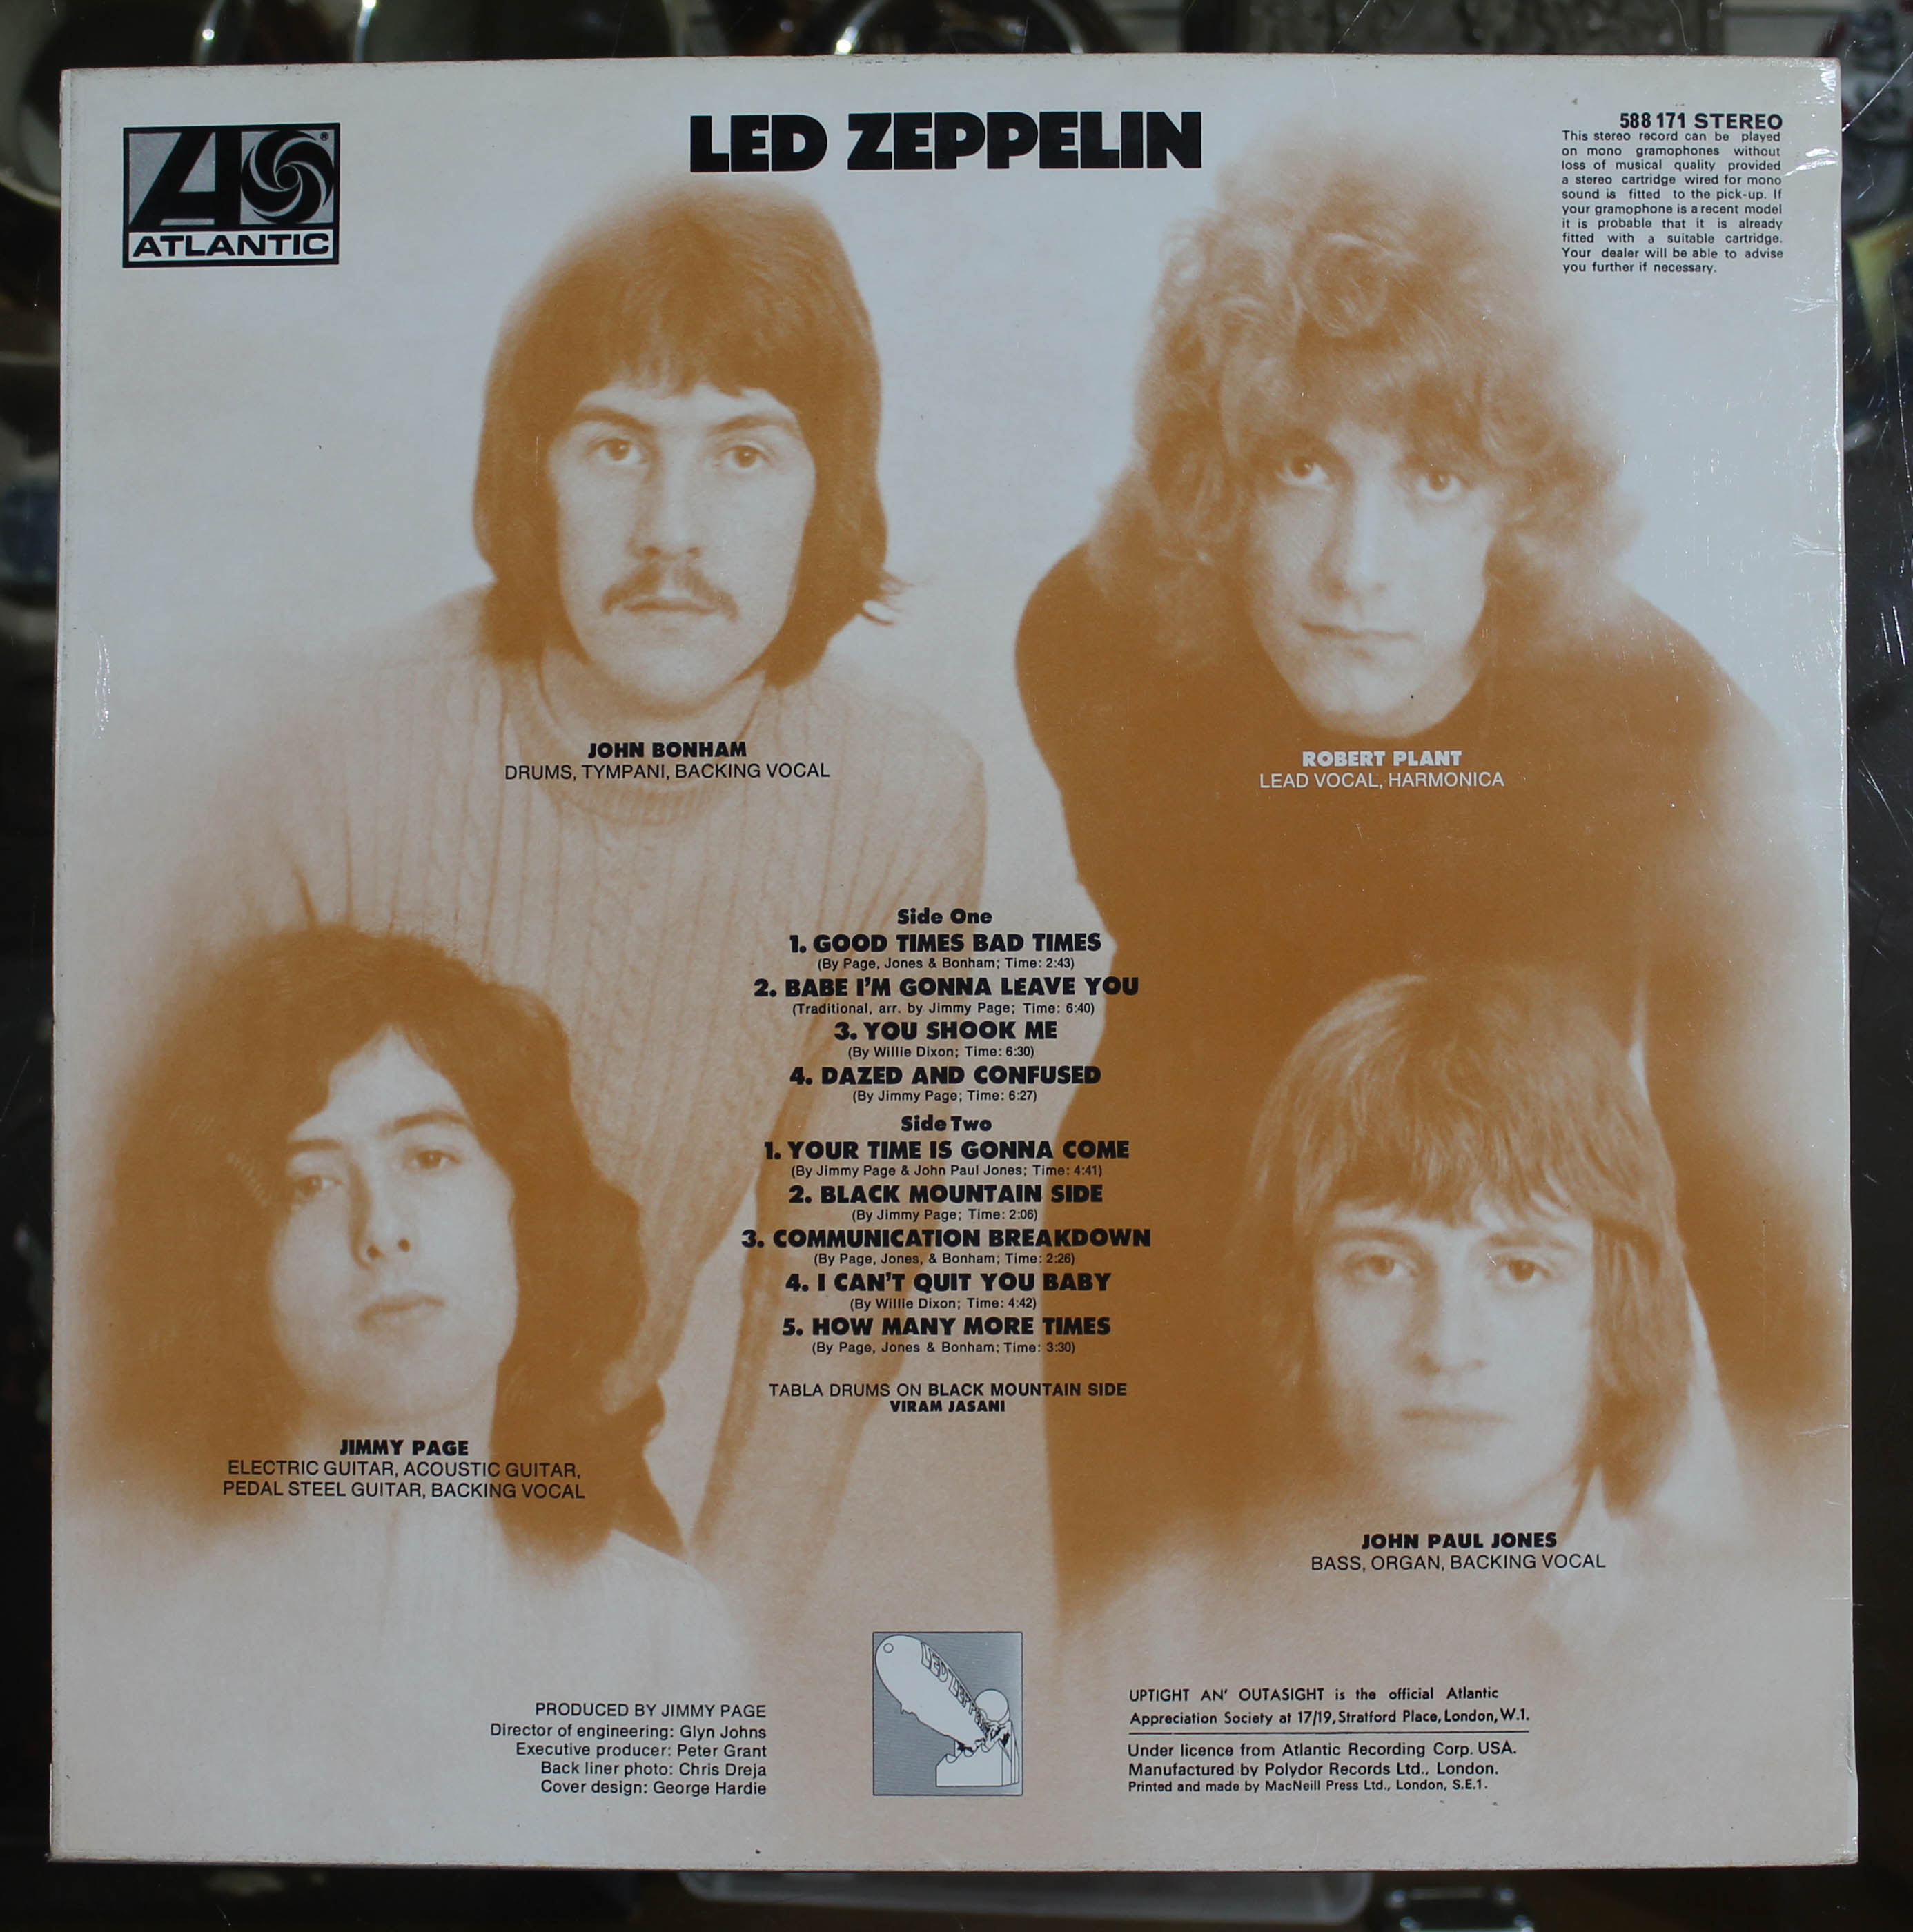 Led Zeppelin - Led Zepplin UK 1968 later pressing stereo LP Atlantic 588171 - Image 6 of 6